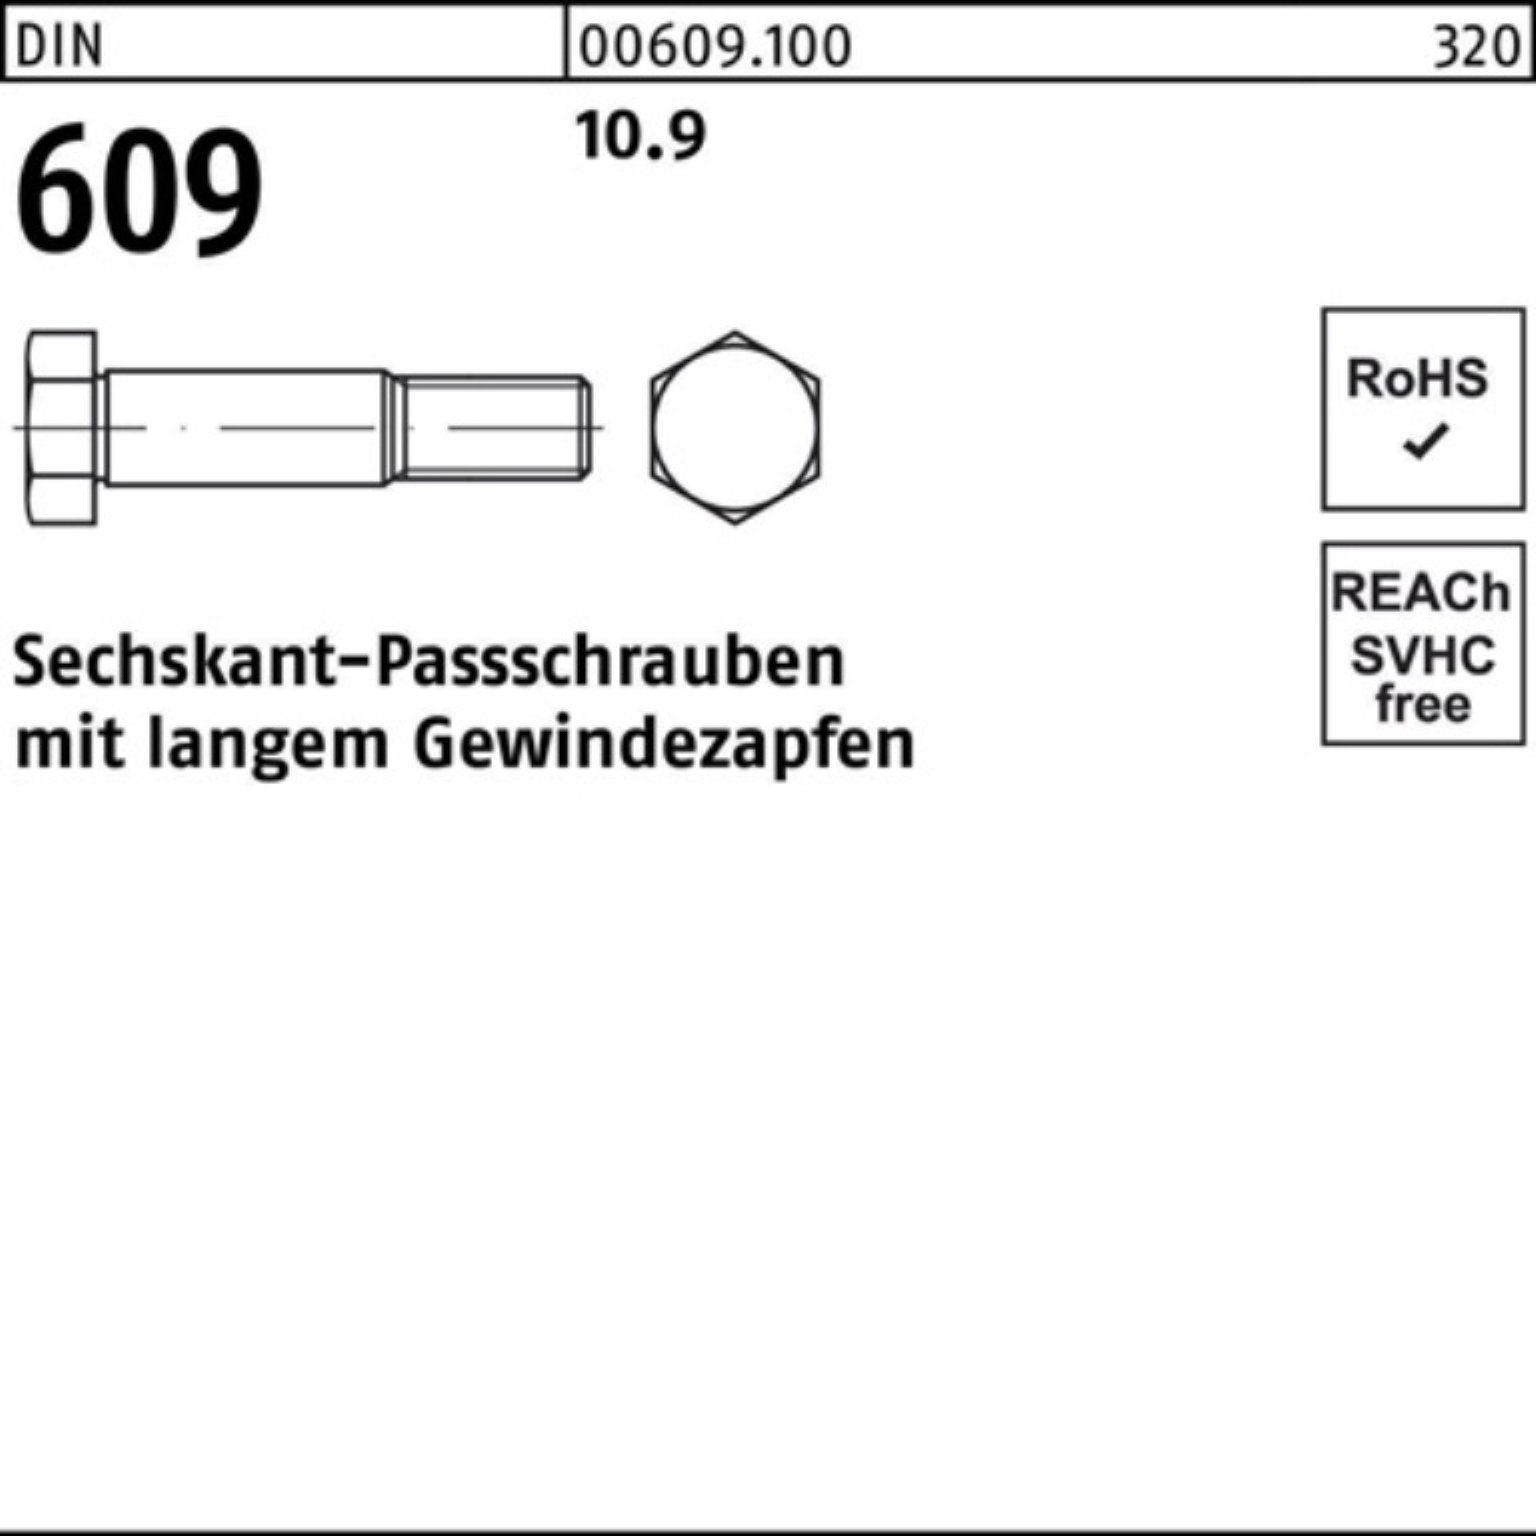 Sechskantpassschraube Schraube Pack 609 M8x 1 DIN Gewindezapfen Reyher 35 langem 100er